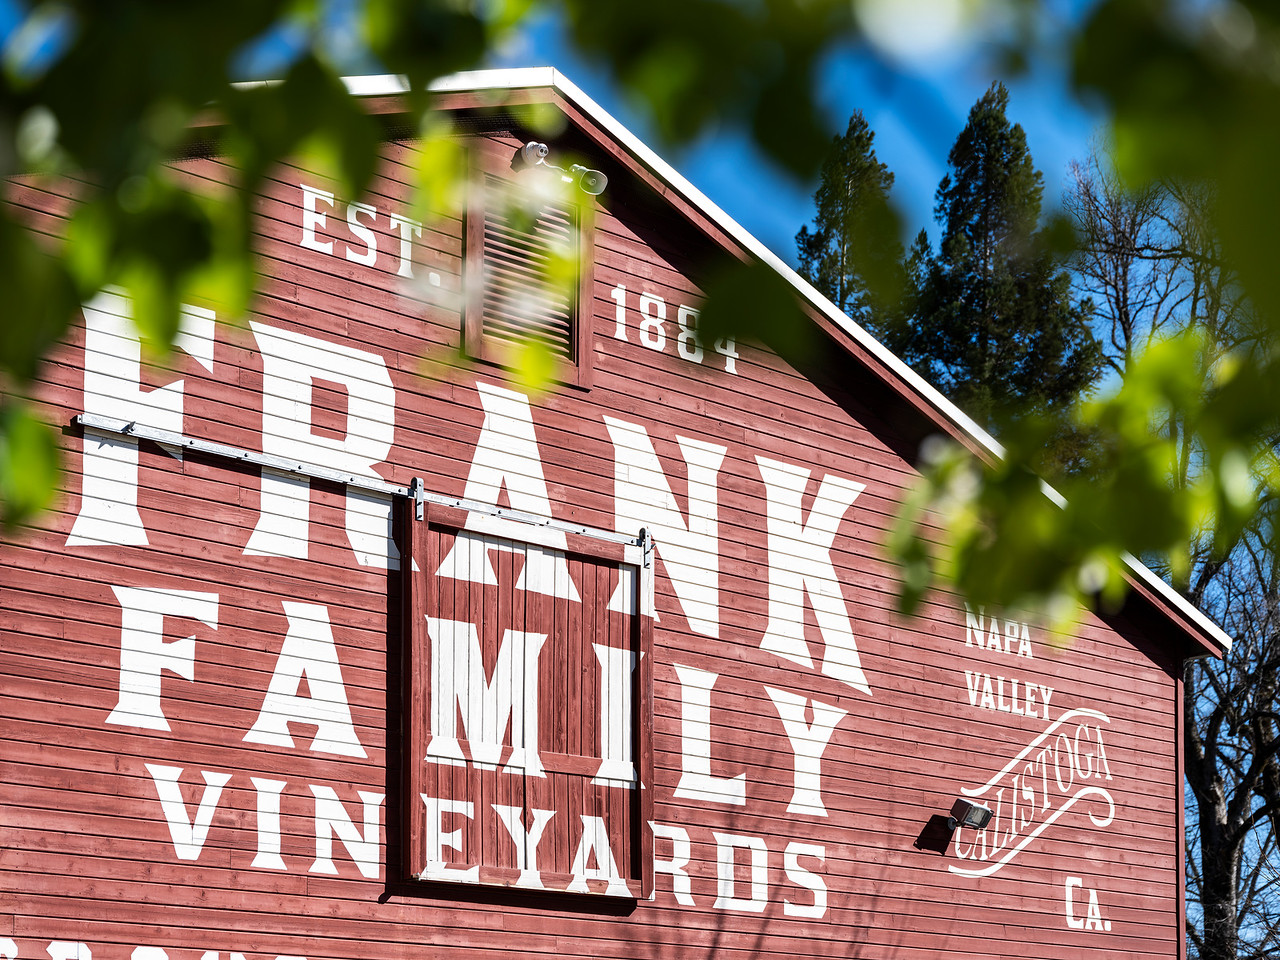 Frank Family Vineyards logo on barn side.